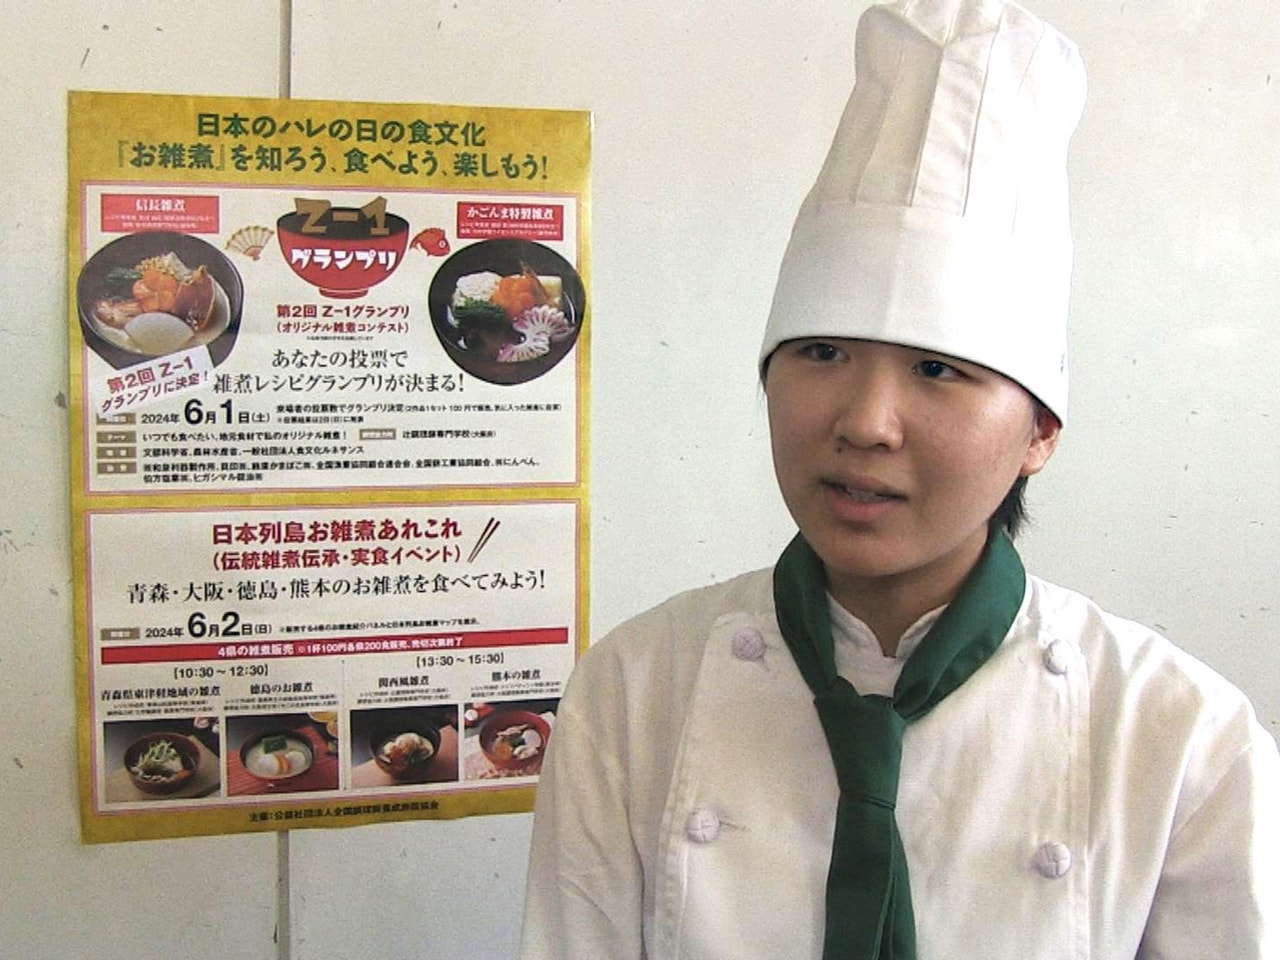 オリジナル雑煮の日本一を決めるコンテストで、岐阜市の高校生がグランプリに輝きまし...